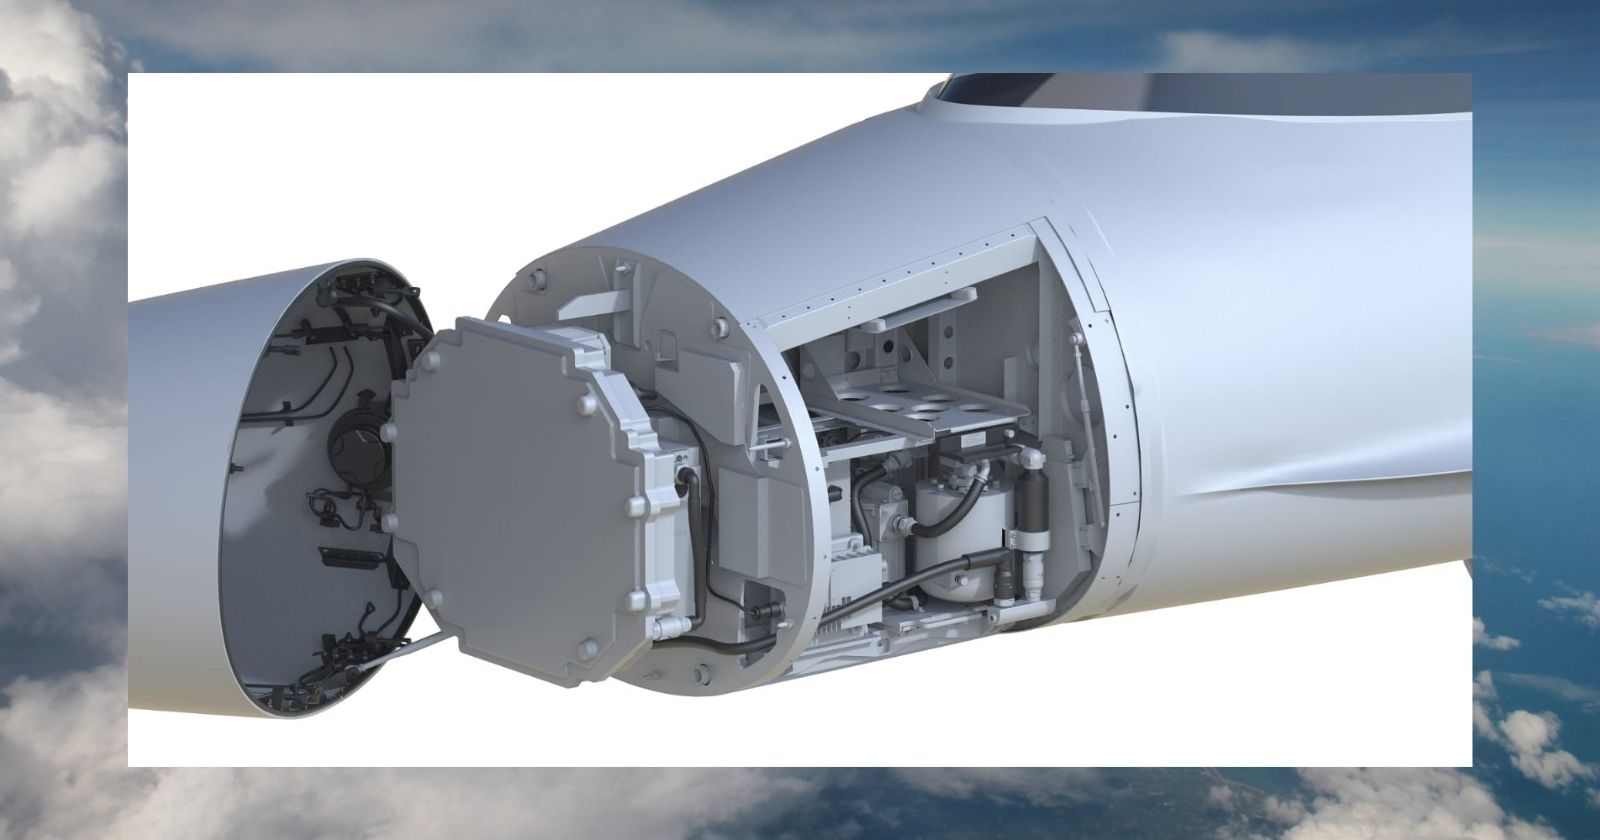 Artik ABD dusunsun Aselsan AESA radari ilk ucusunu gerceklestirdi